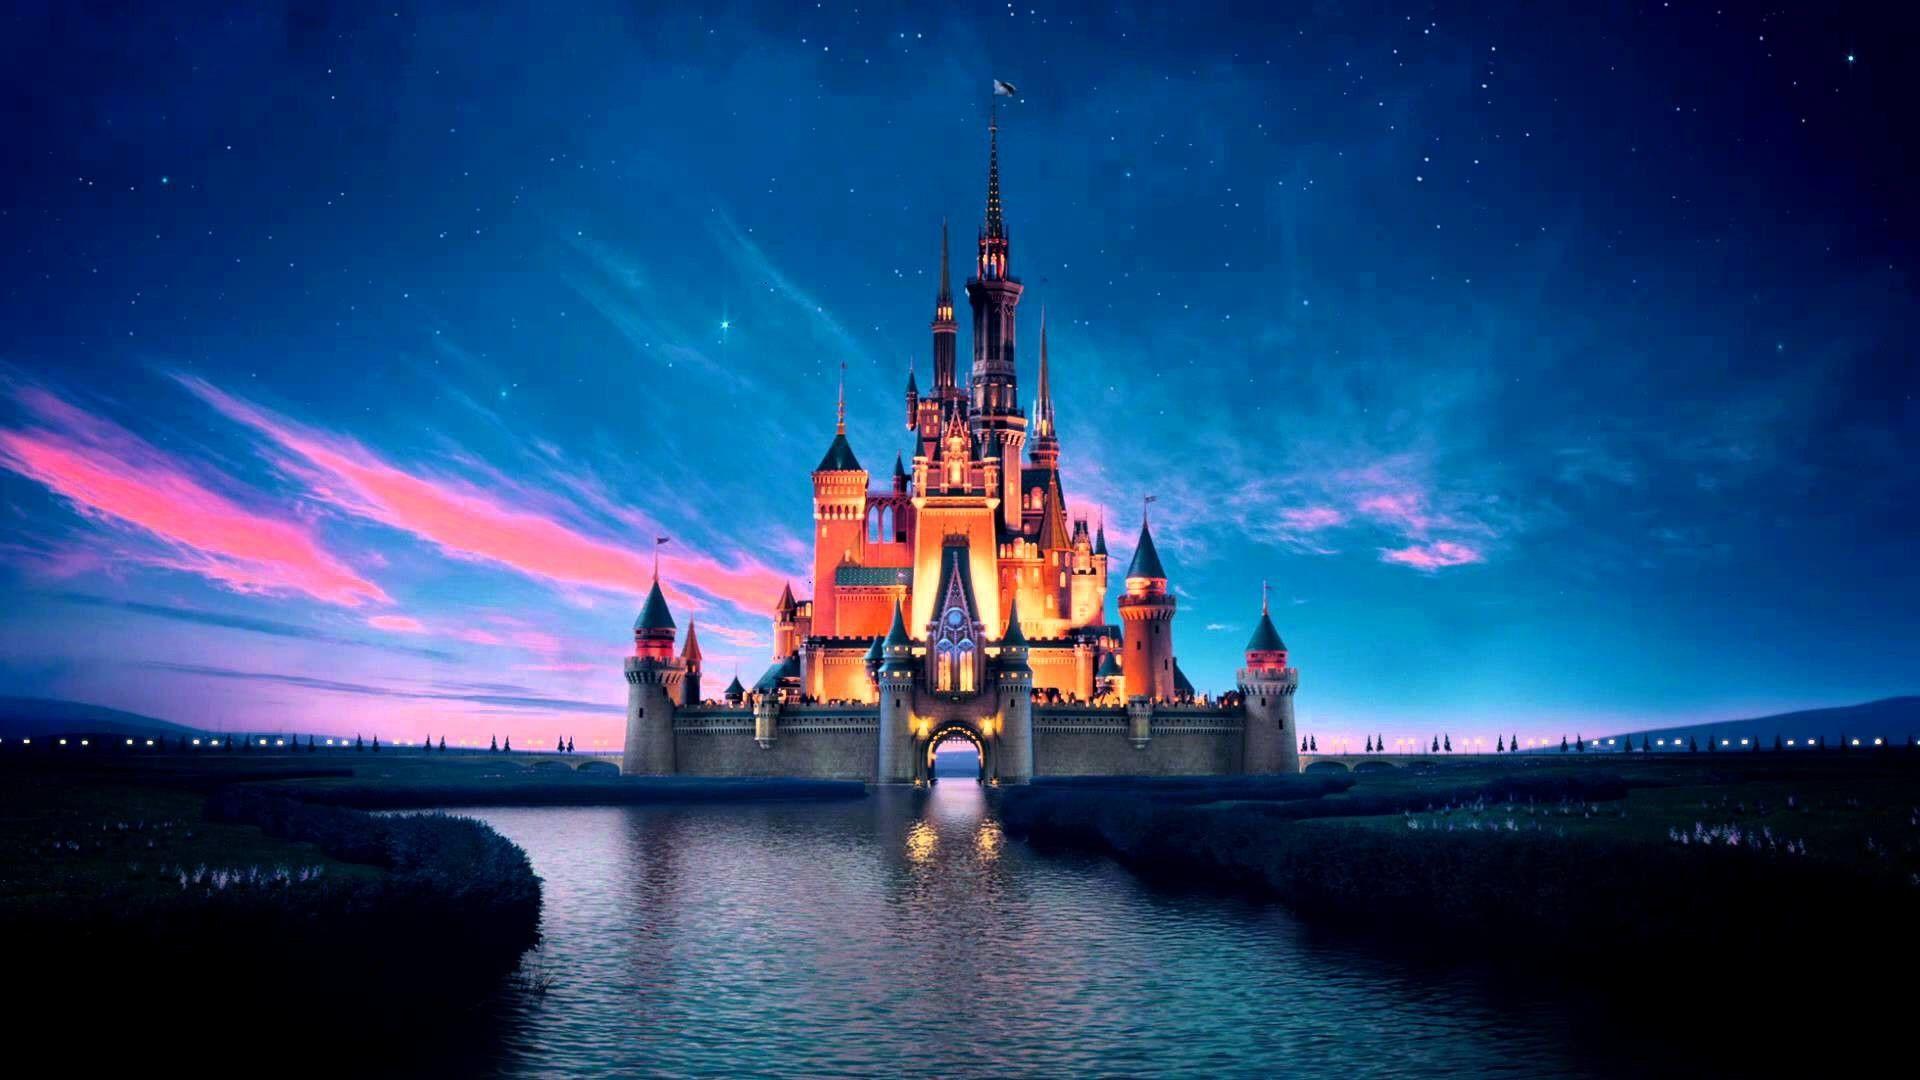 Disney castle at night wallpaper - Disneyland